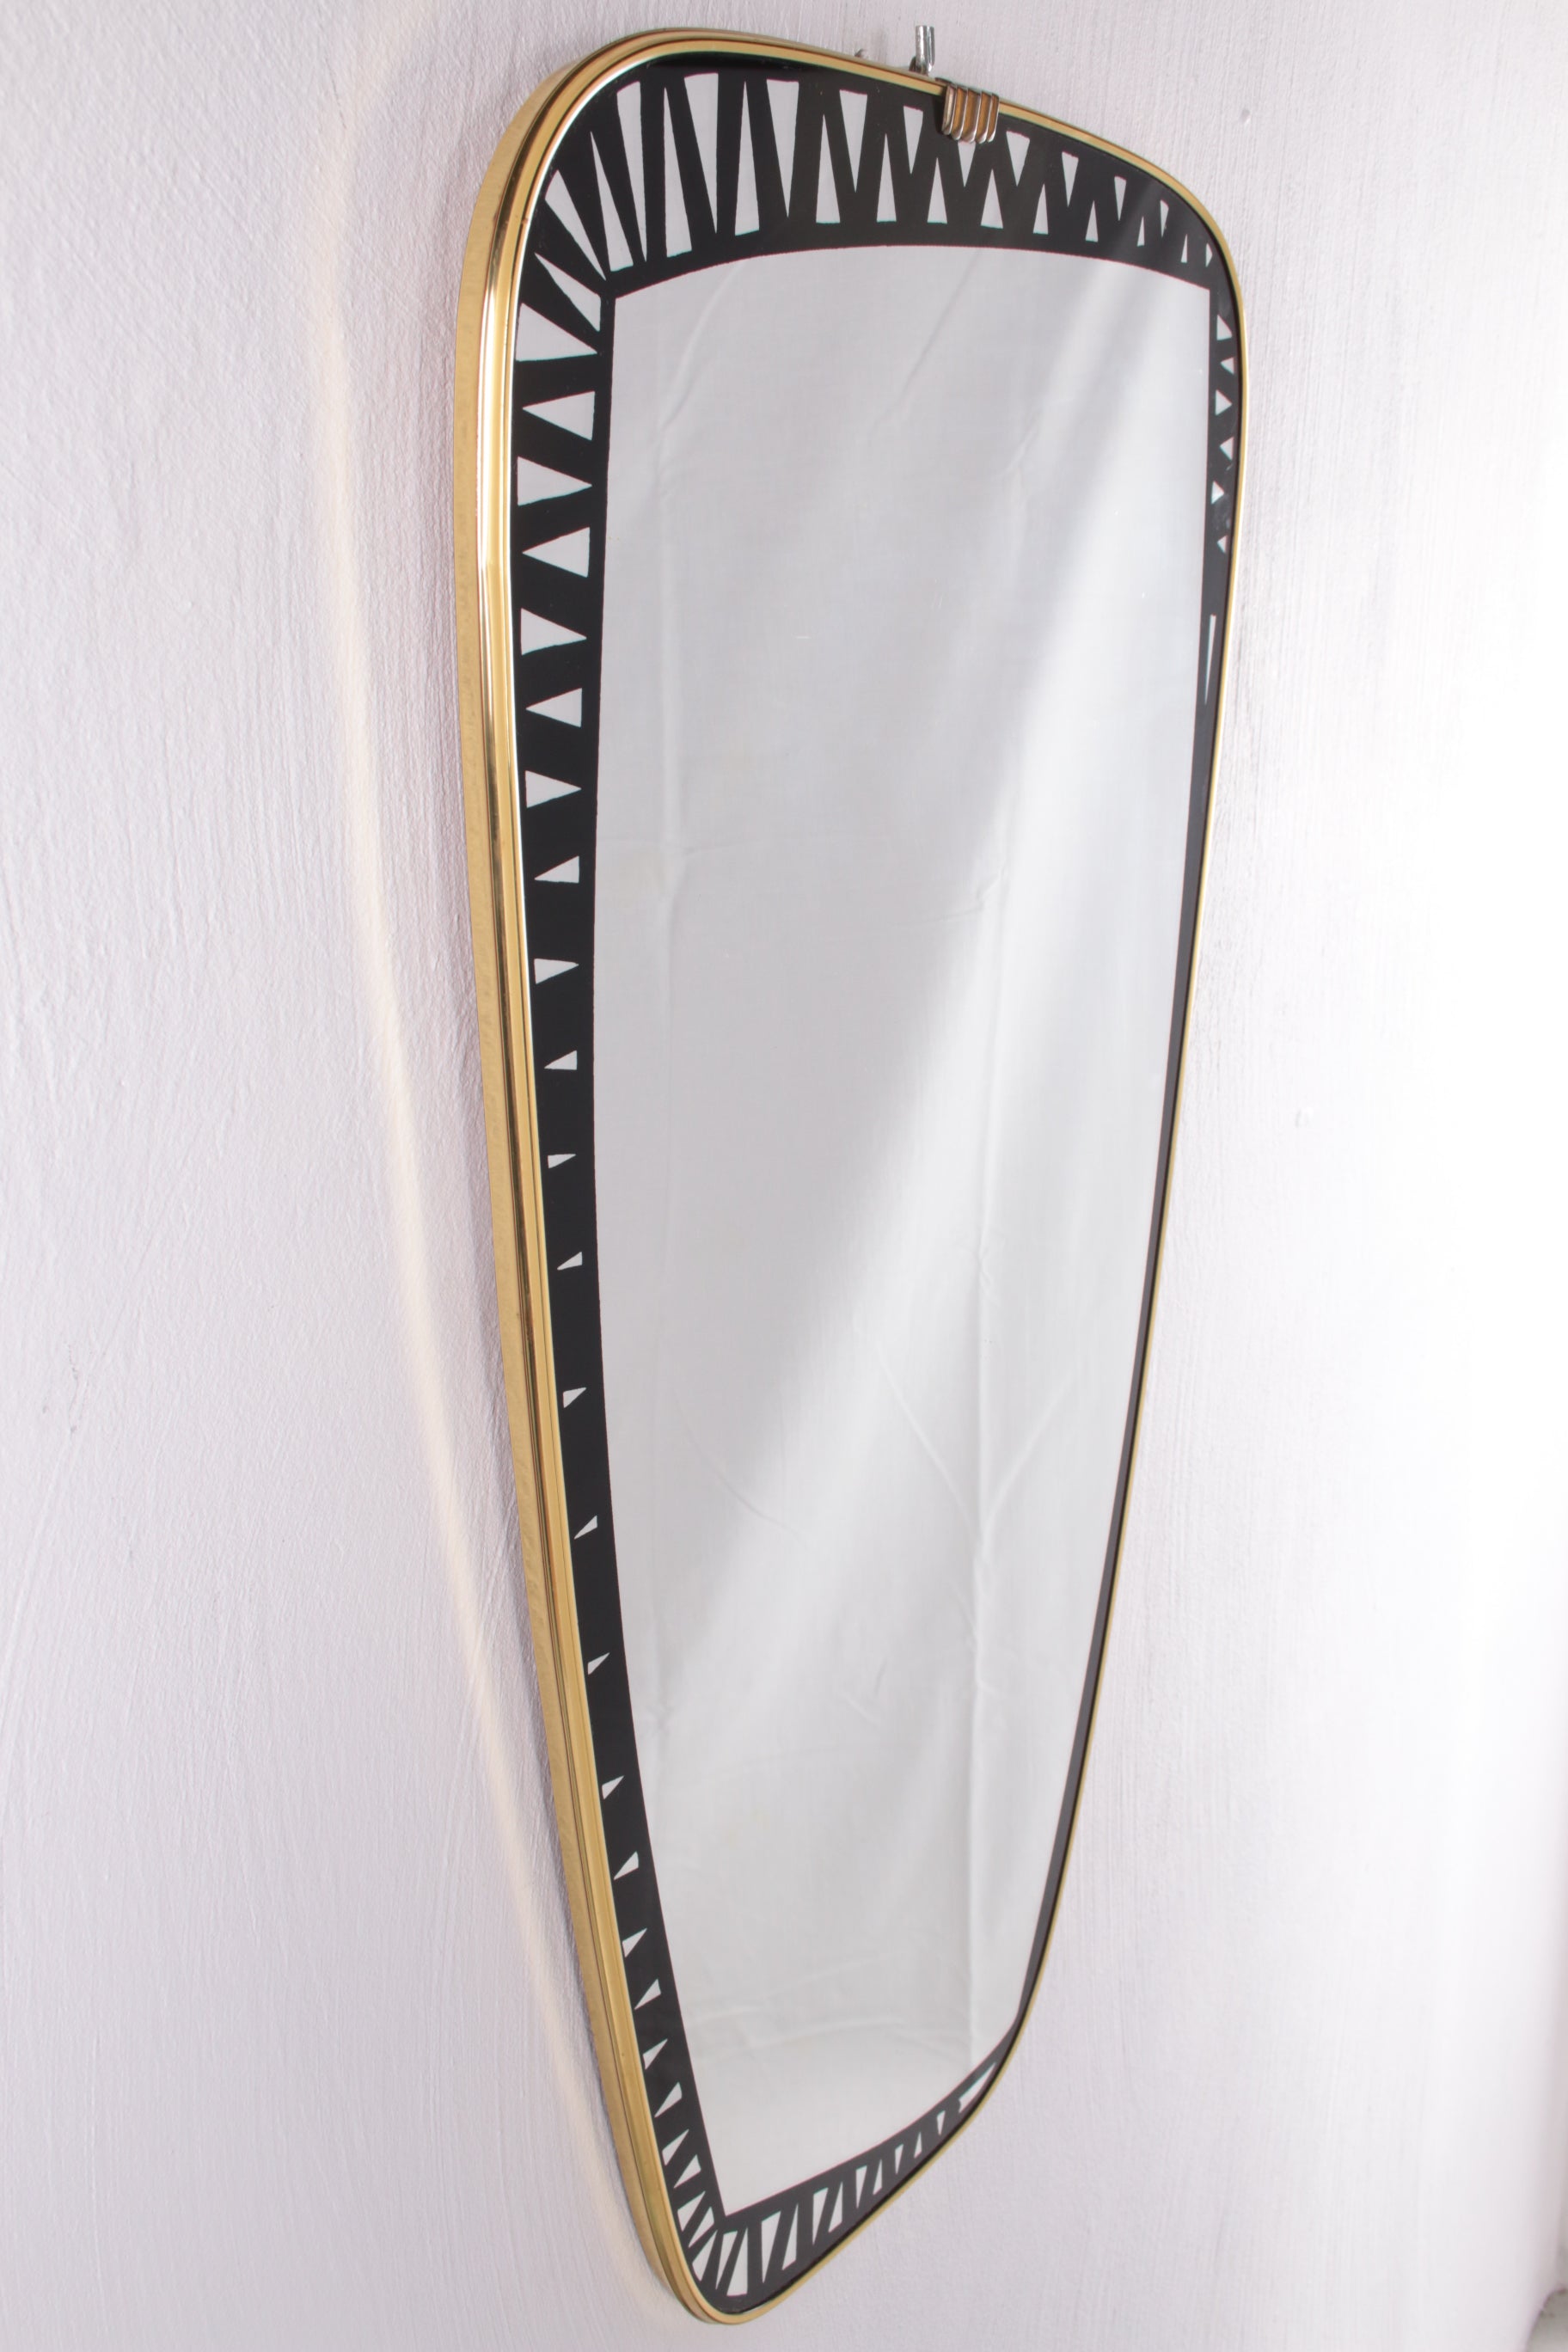 Grote spiegel ontwerp van Tacchini Dorian jaren70 zijkant